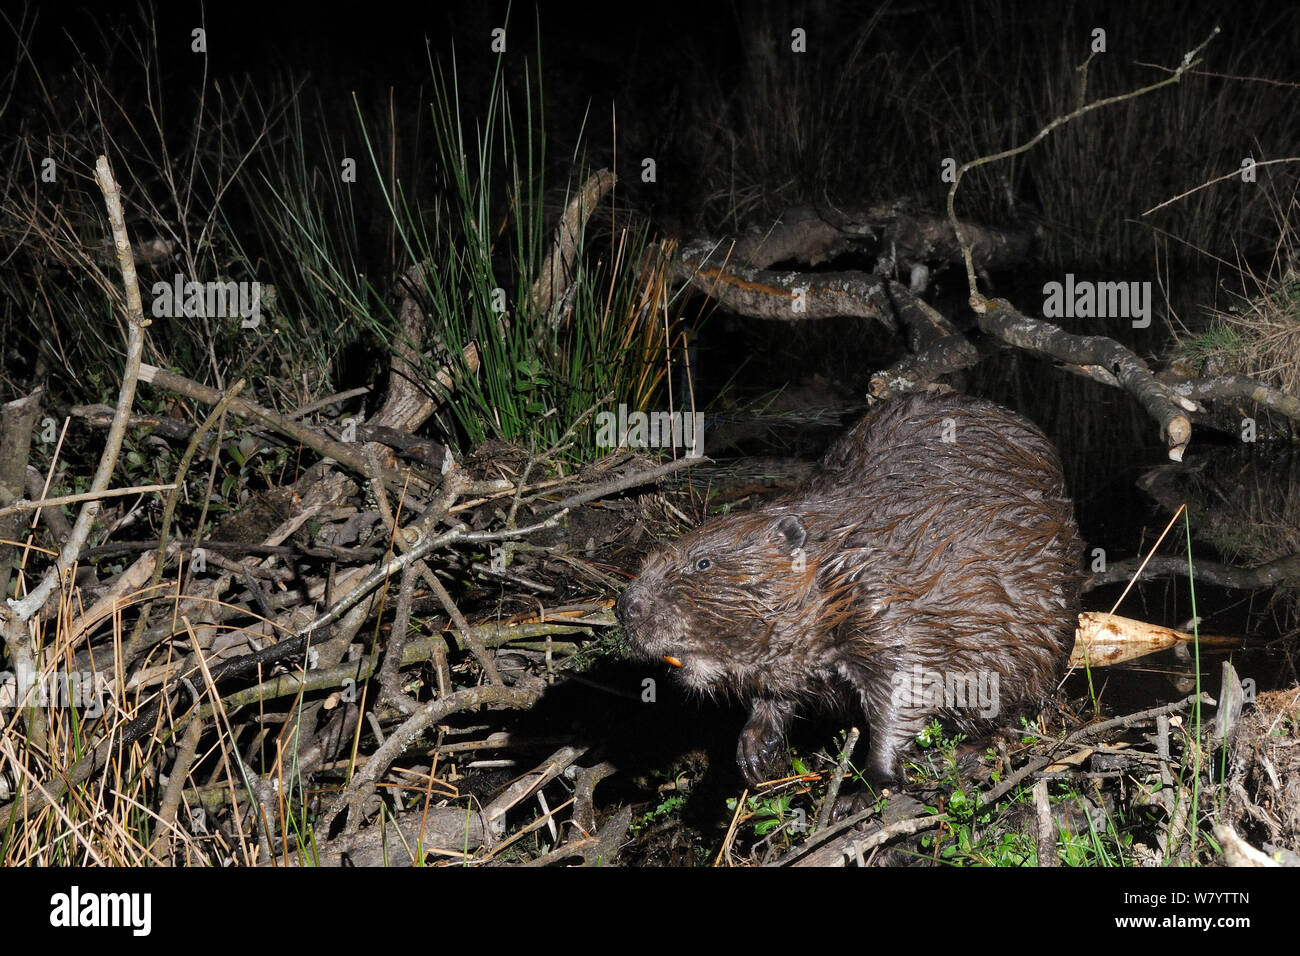 Le castor d'Eurasie (Castor fiber) debout sur son barrage dans les bois La nuit, enceinte du projet Castor Devon, dirigée par Devon Wildlife Trust, Devon, UK, avril. Prise par une caméra à distance piège. Banque D'Images